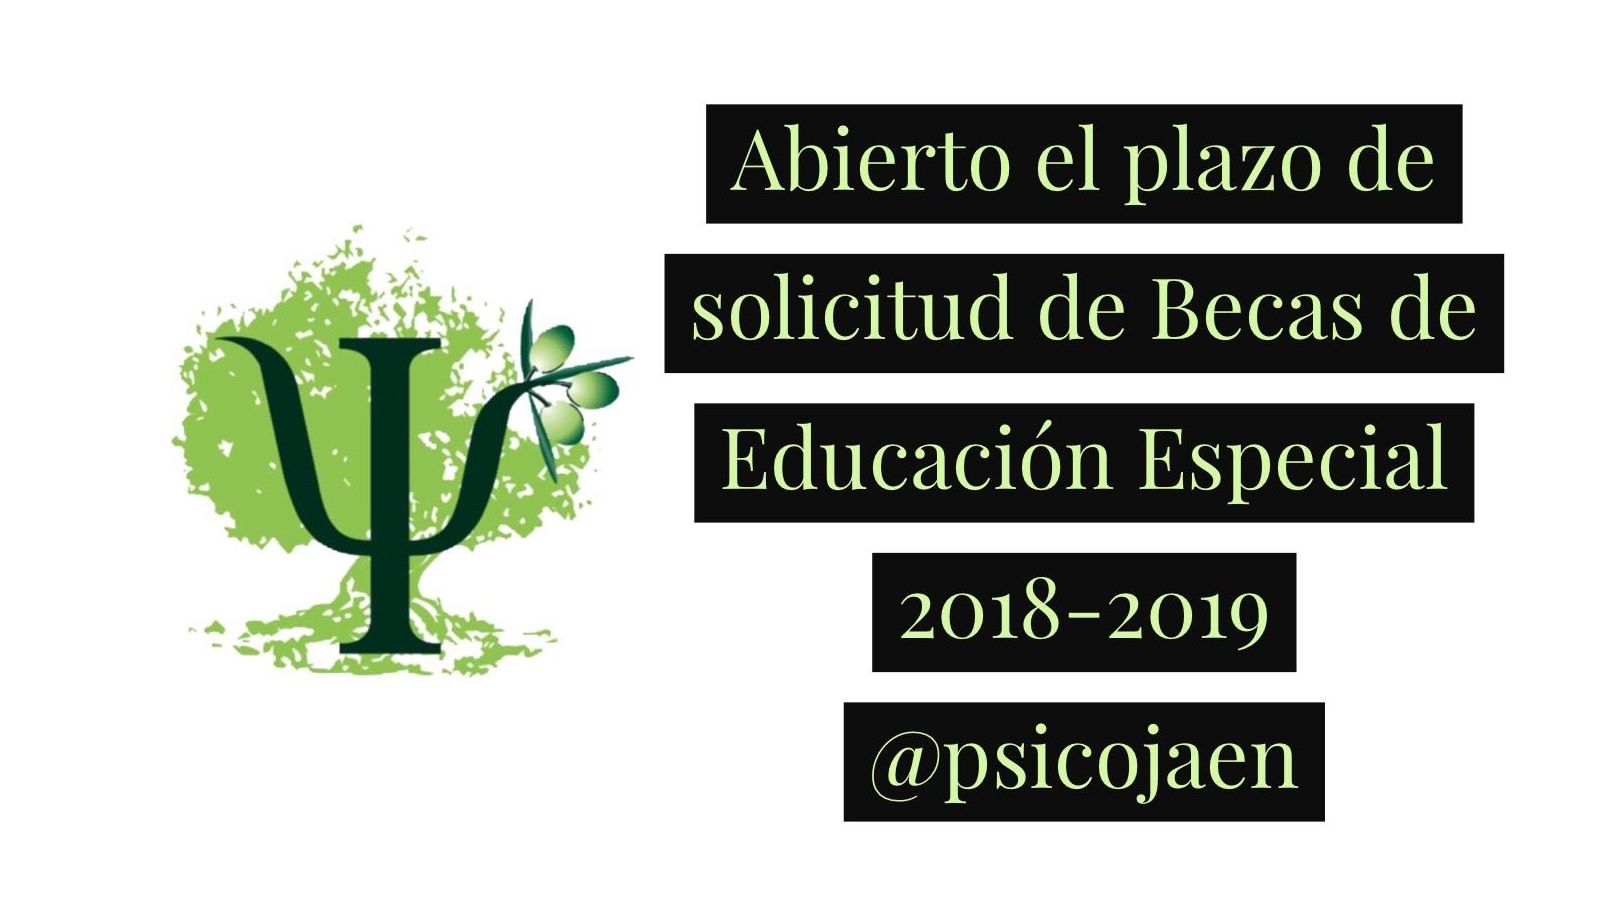 ABIERTO EL PLAZO DE SOLICITUD PARA LAS BECAS DE EDUCACIÓN ESPECIAL PARA EL CURSO 2018-2019